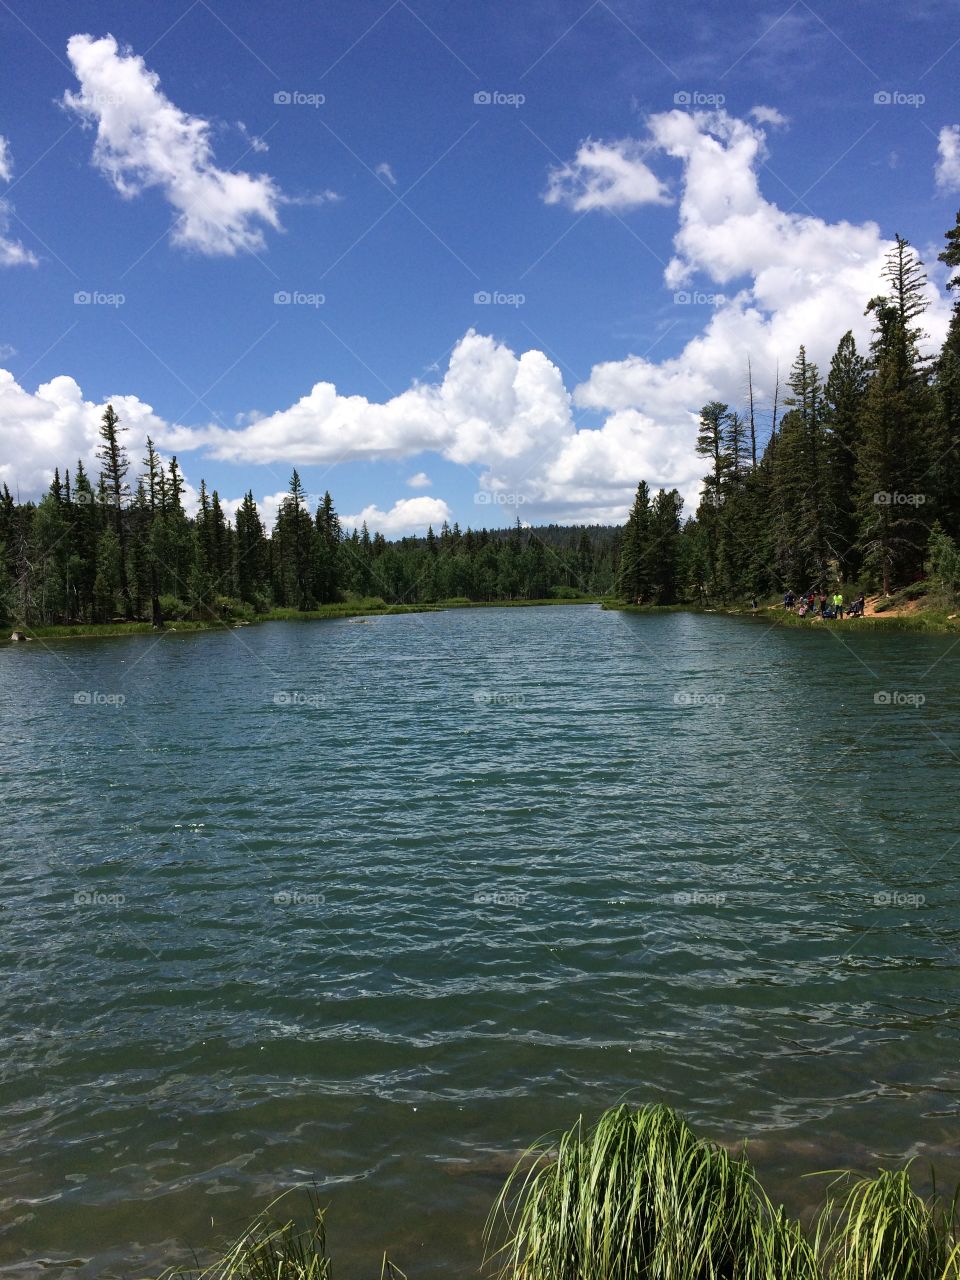 Open Lake